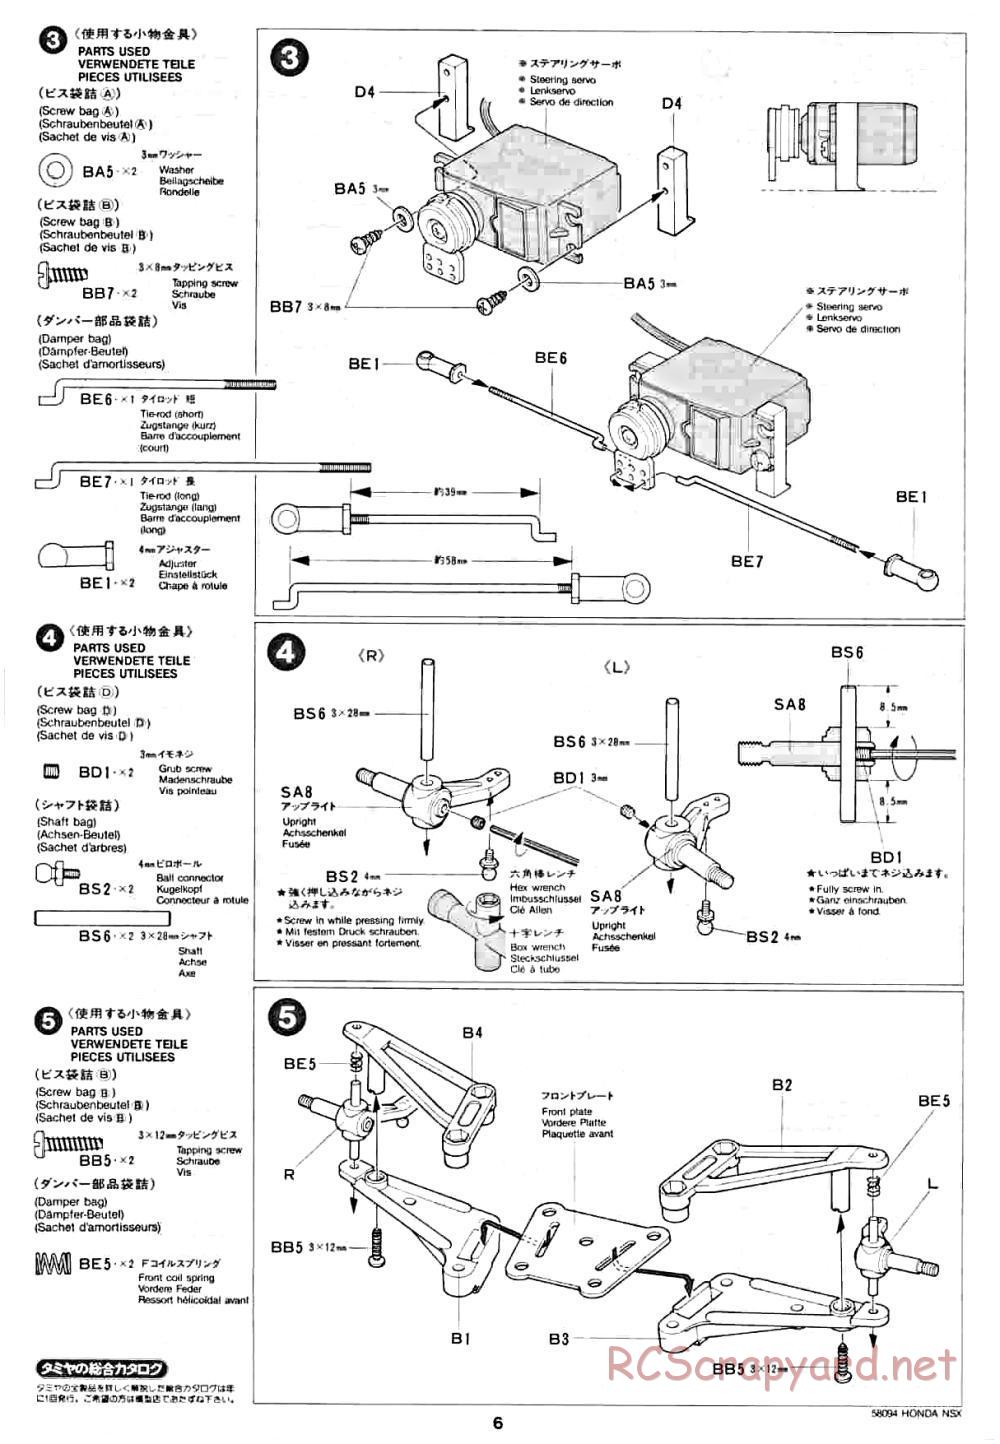 Tamiya - Honda NSX - 58094 - Manual - Page 6